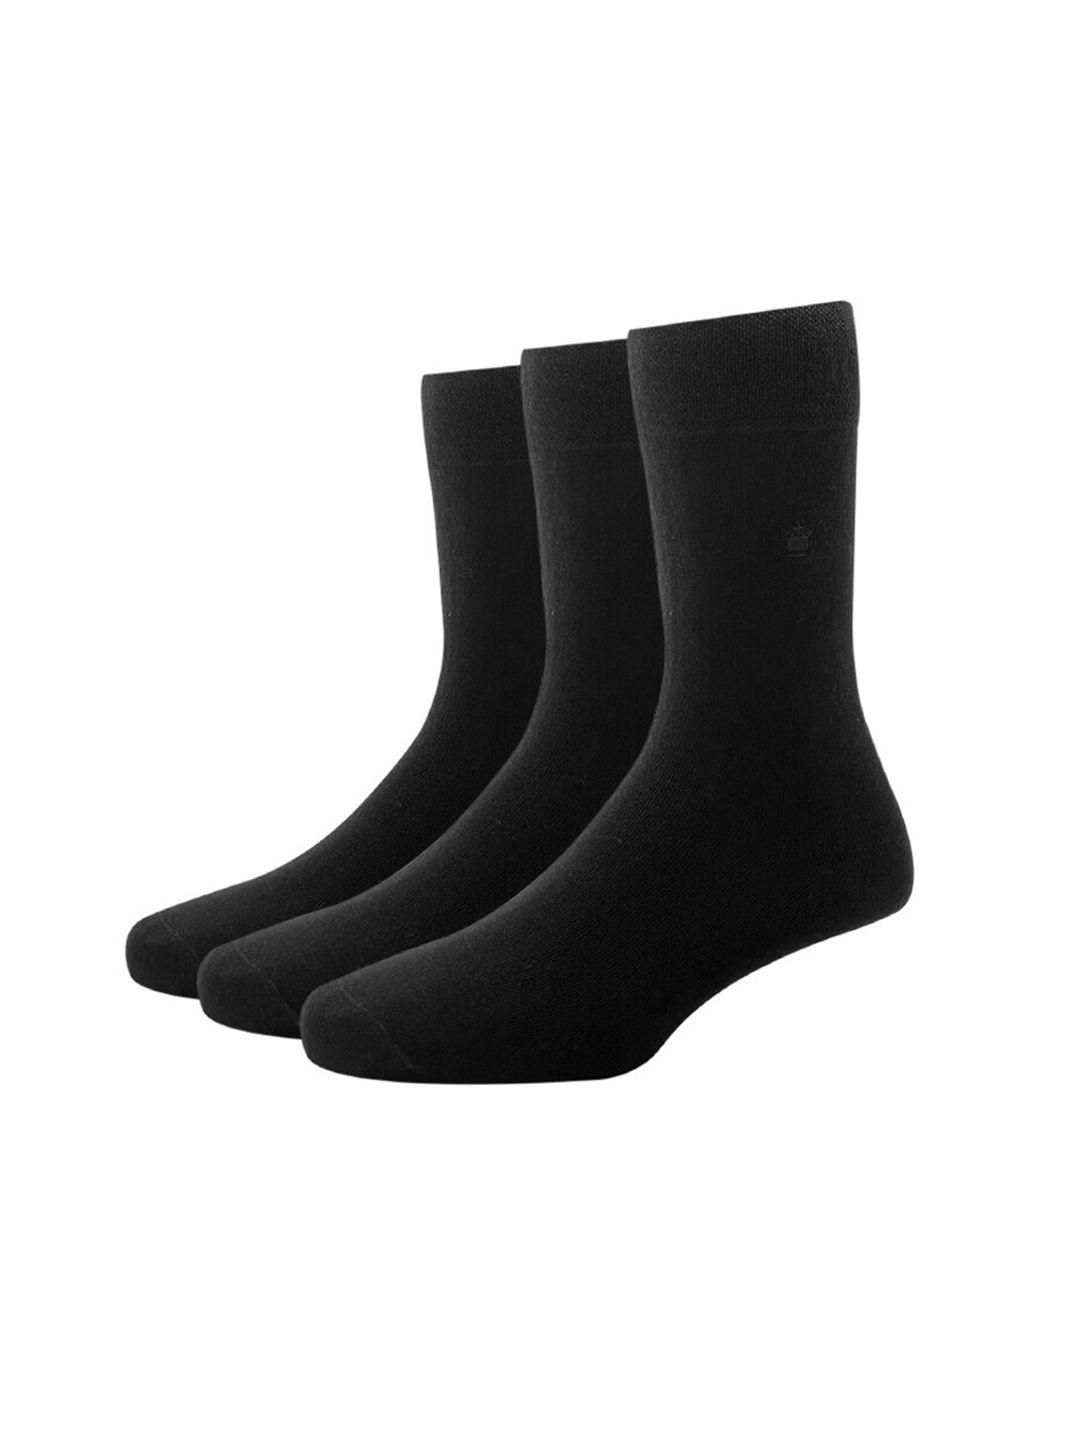 louis philippe men set of 3 black solid calf-length socks